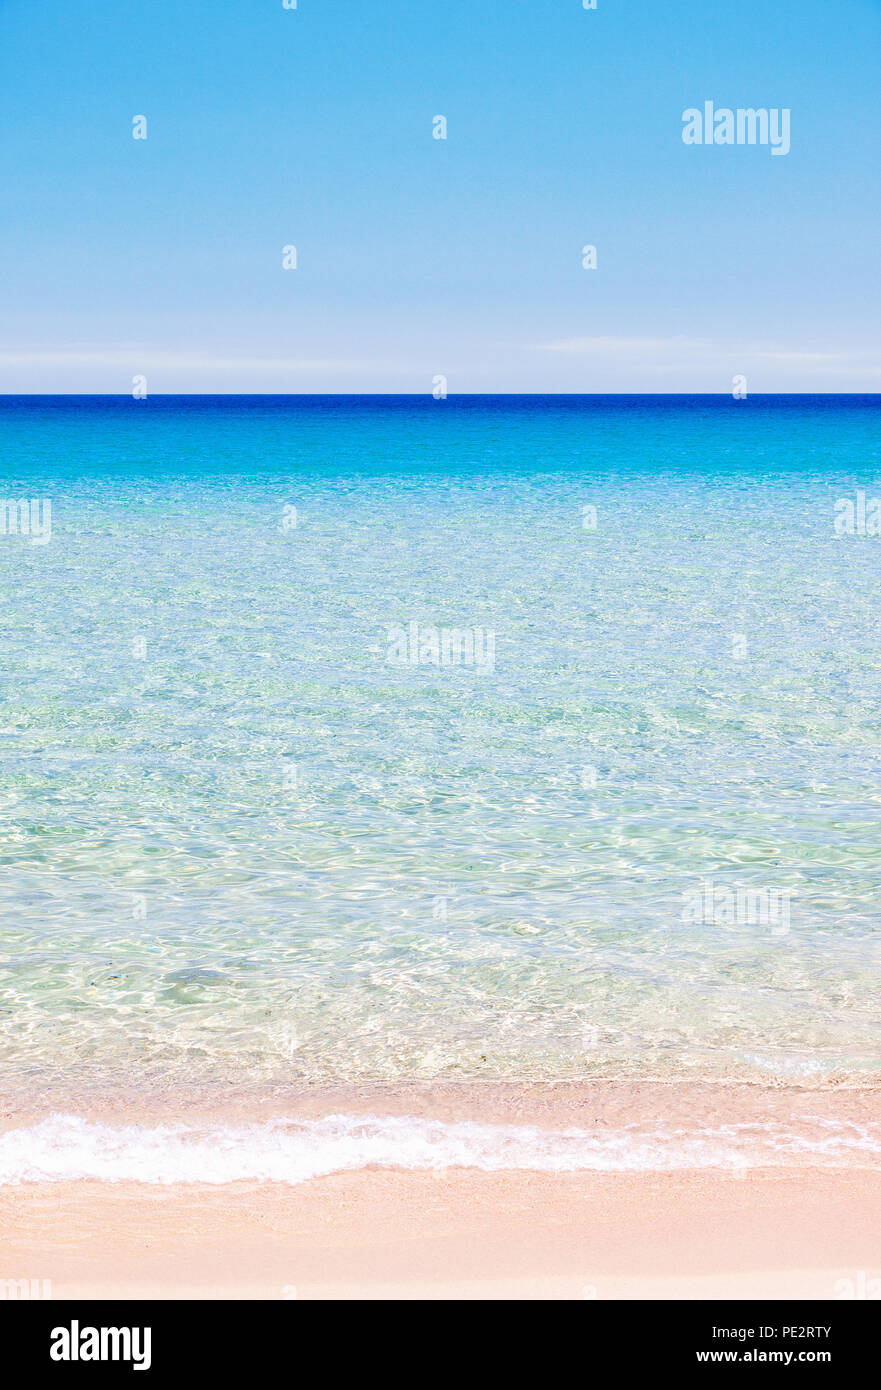 Ruhigen Ozean Hintergrund mit bunten Schichten von Strand, Meer und Himmel, vertikale Ausrichtung Stockfoto